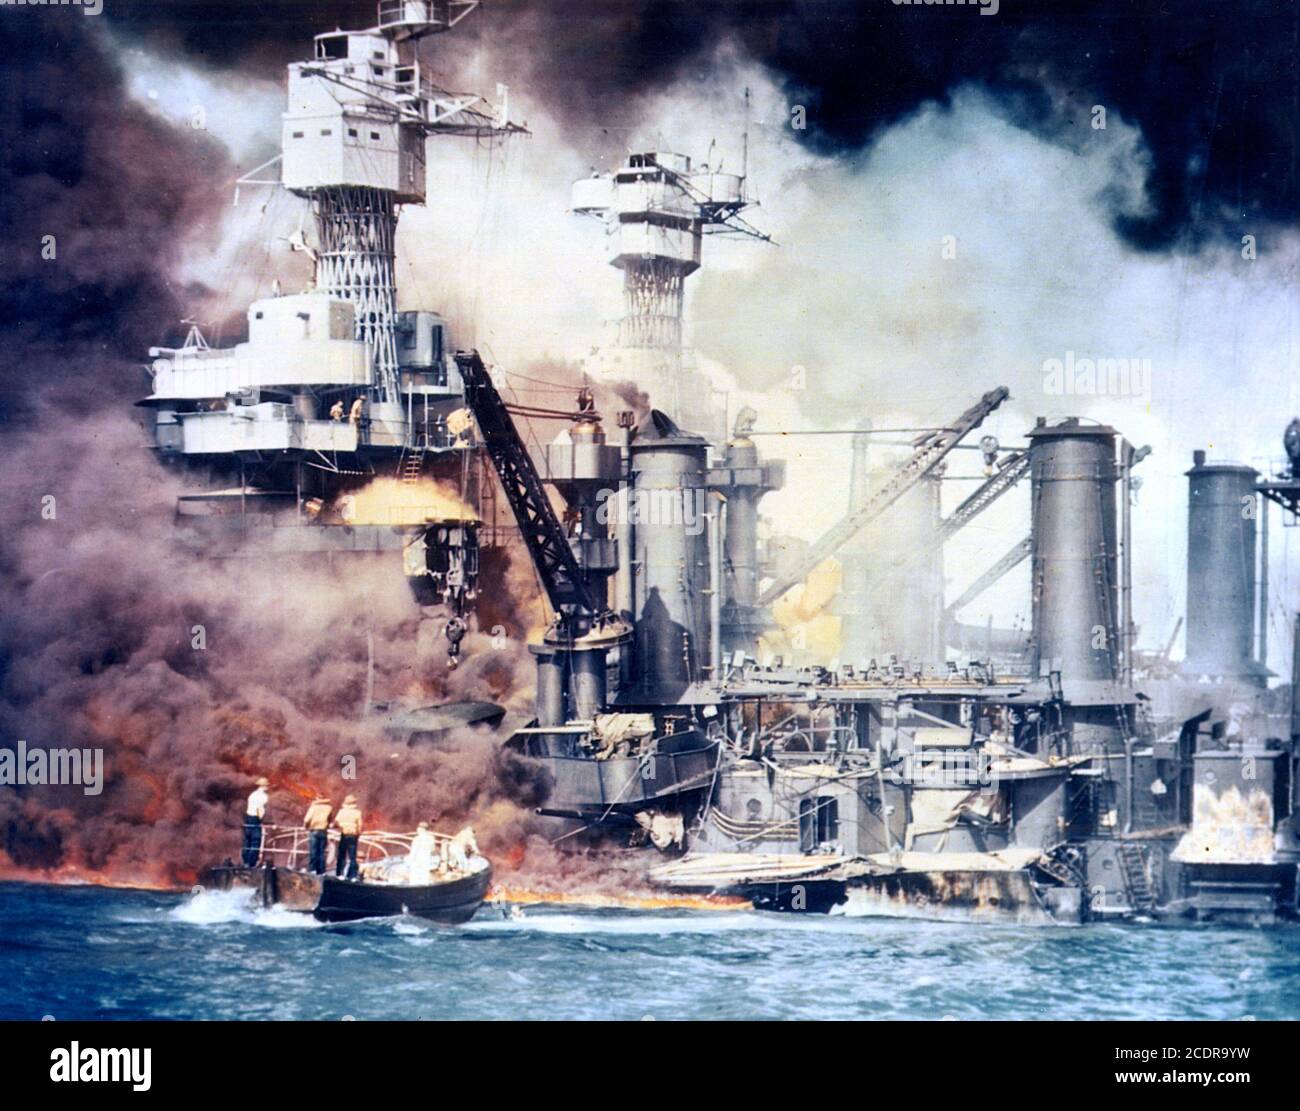 Pearl Harbor 1941. Ein kleines Boot, das nach dem japanischen Angriff auf Pearl Harbor am 7. Dezember 1941 einen Seemann aus der USS West Virginia rettet und im Hintergrund brennt. Stockfoto